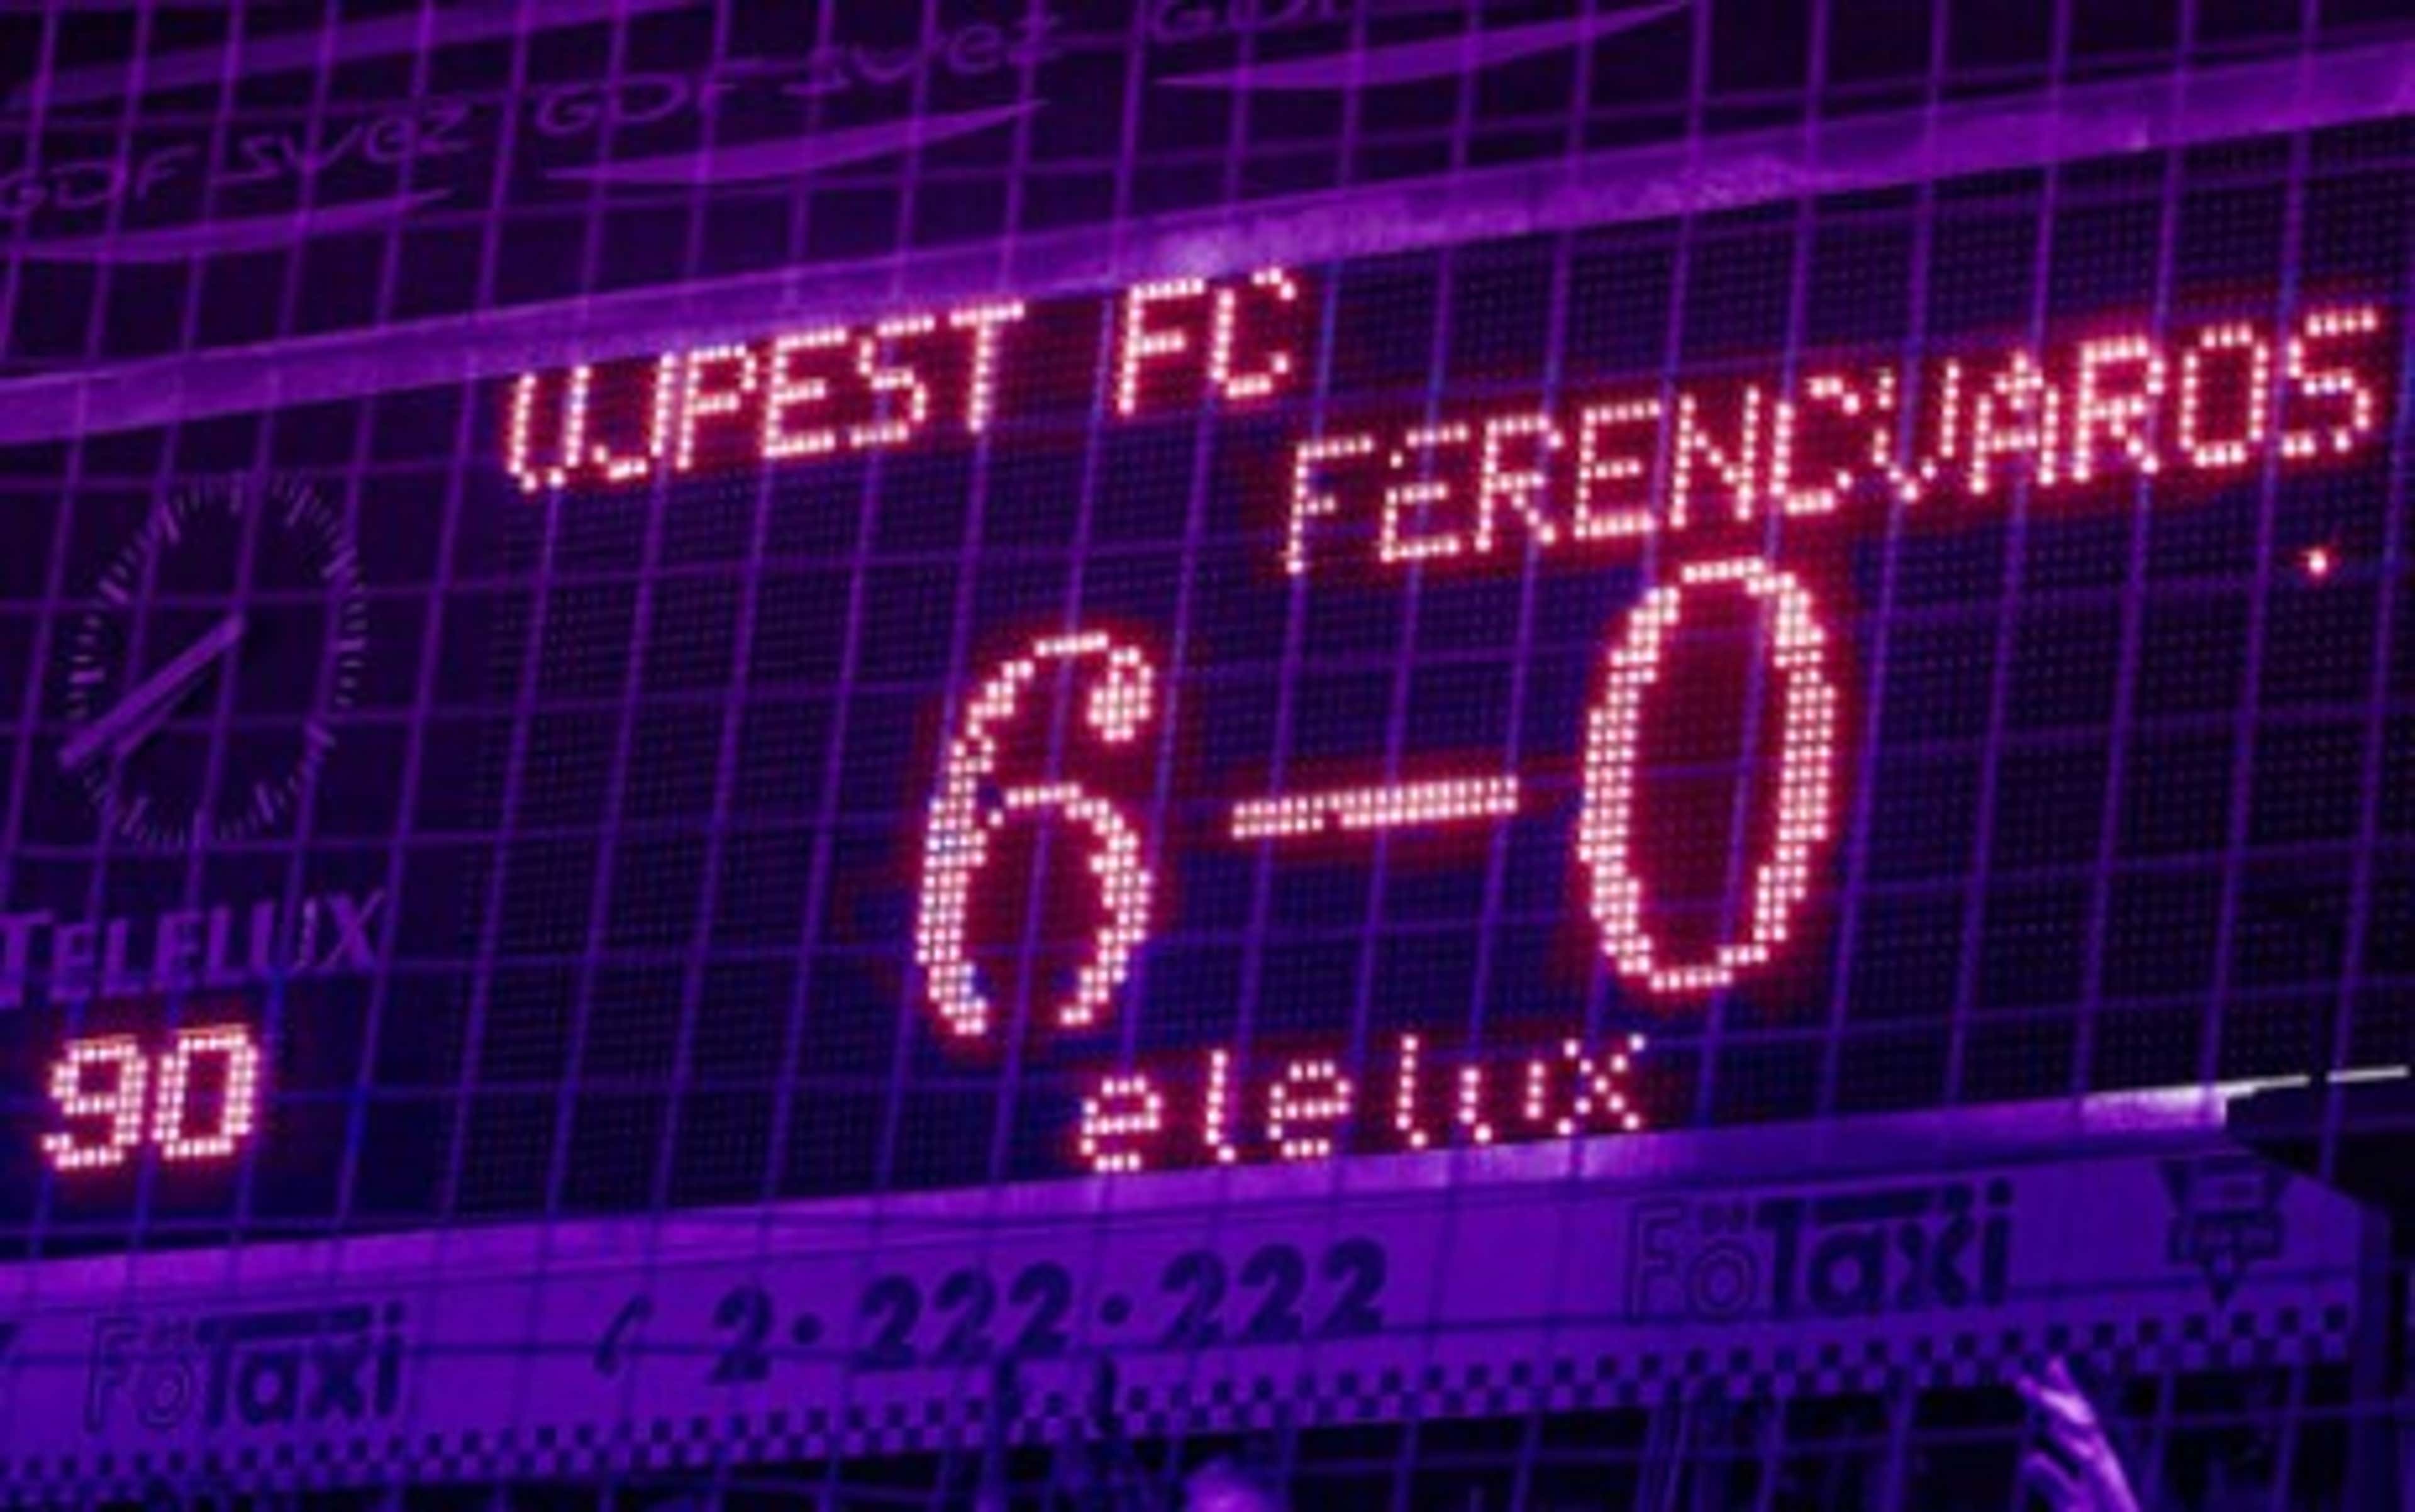 Ferencvárosi TC Újpest FC 09/10 (Simek Péter), photoreti